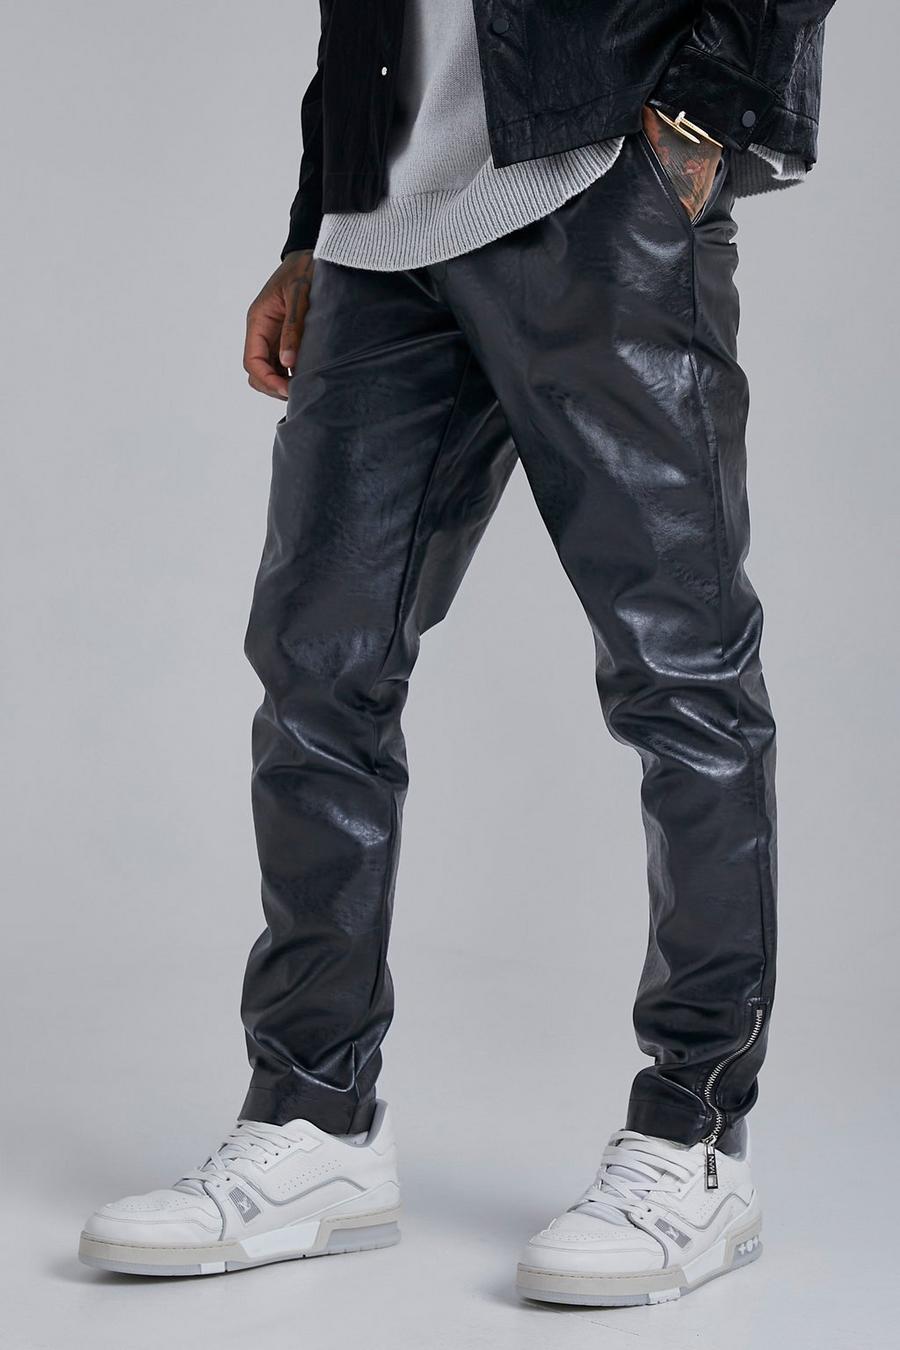 Pantalón ajustado de cuero sintético, Black negro